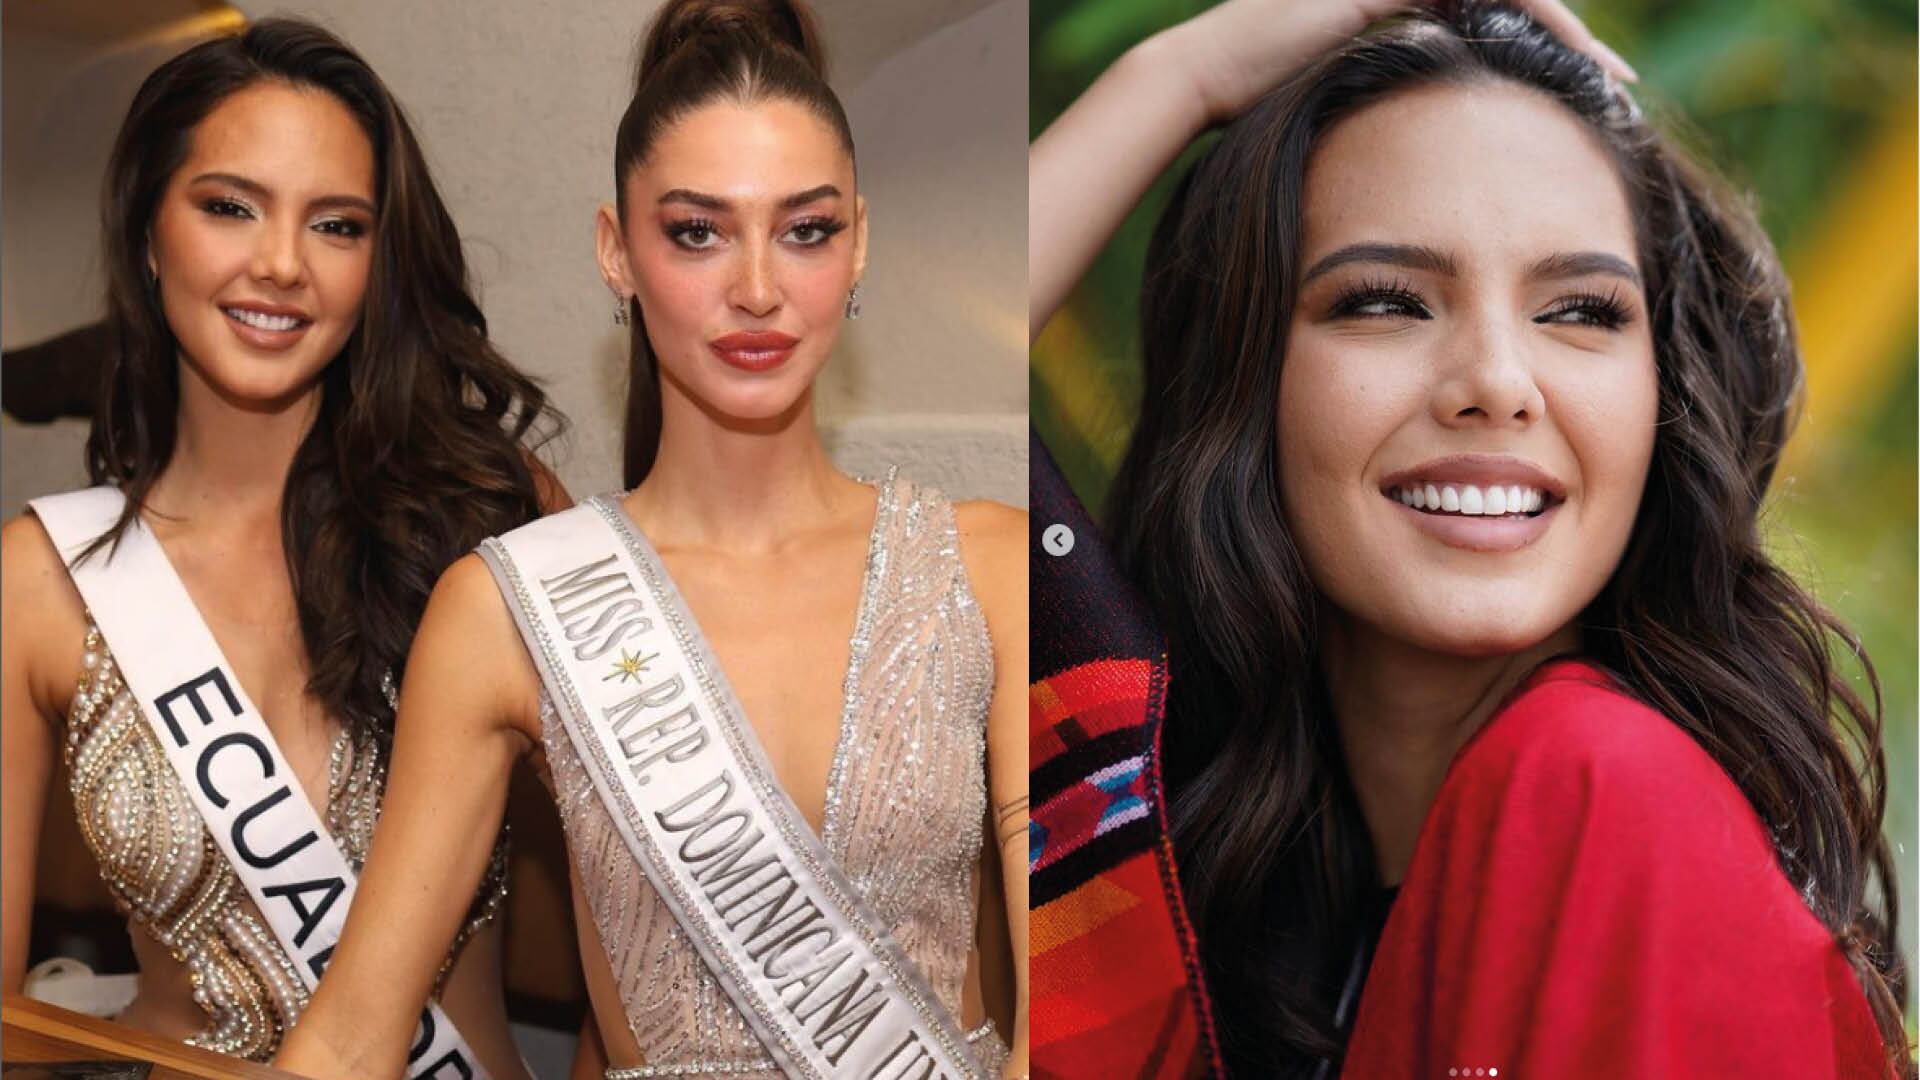 El impactante vestido de Miss Ecuador que robó las miradas de la organización Miss Universo